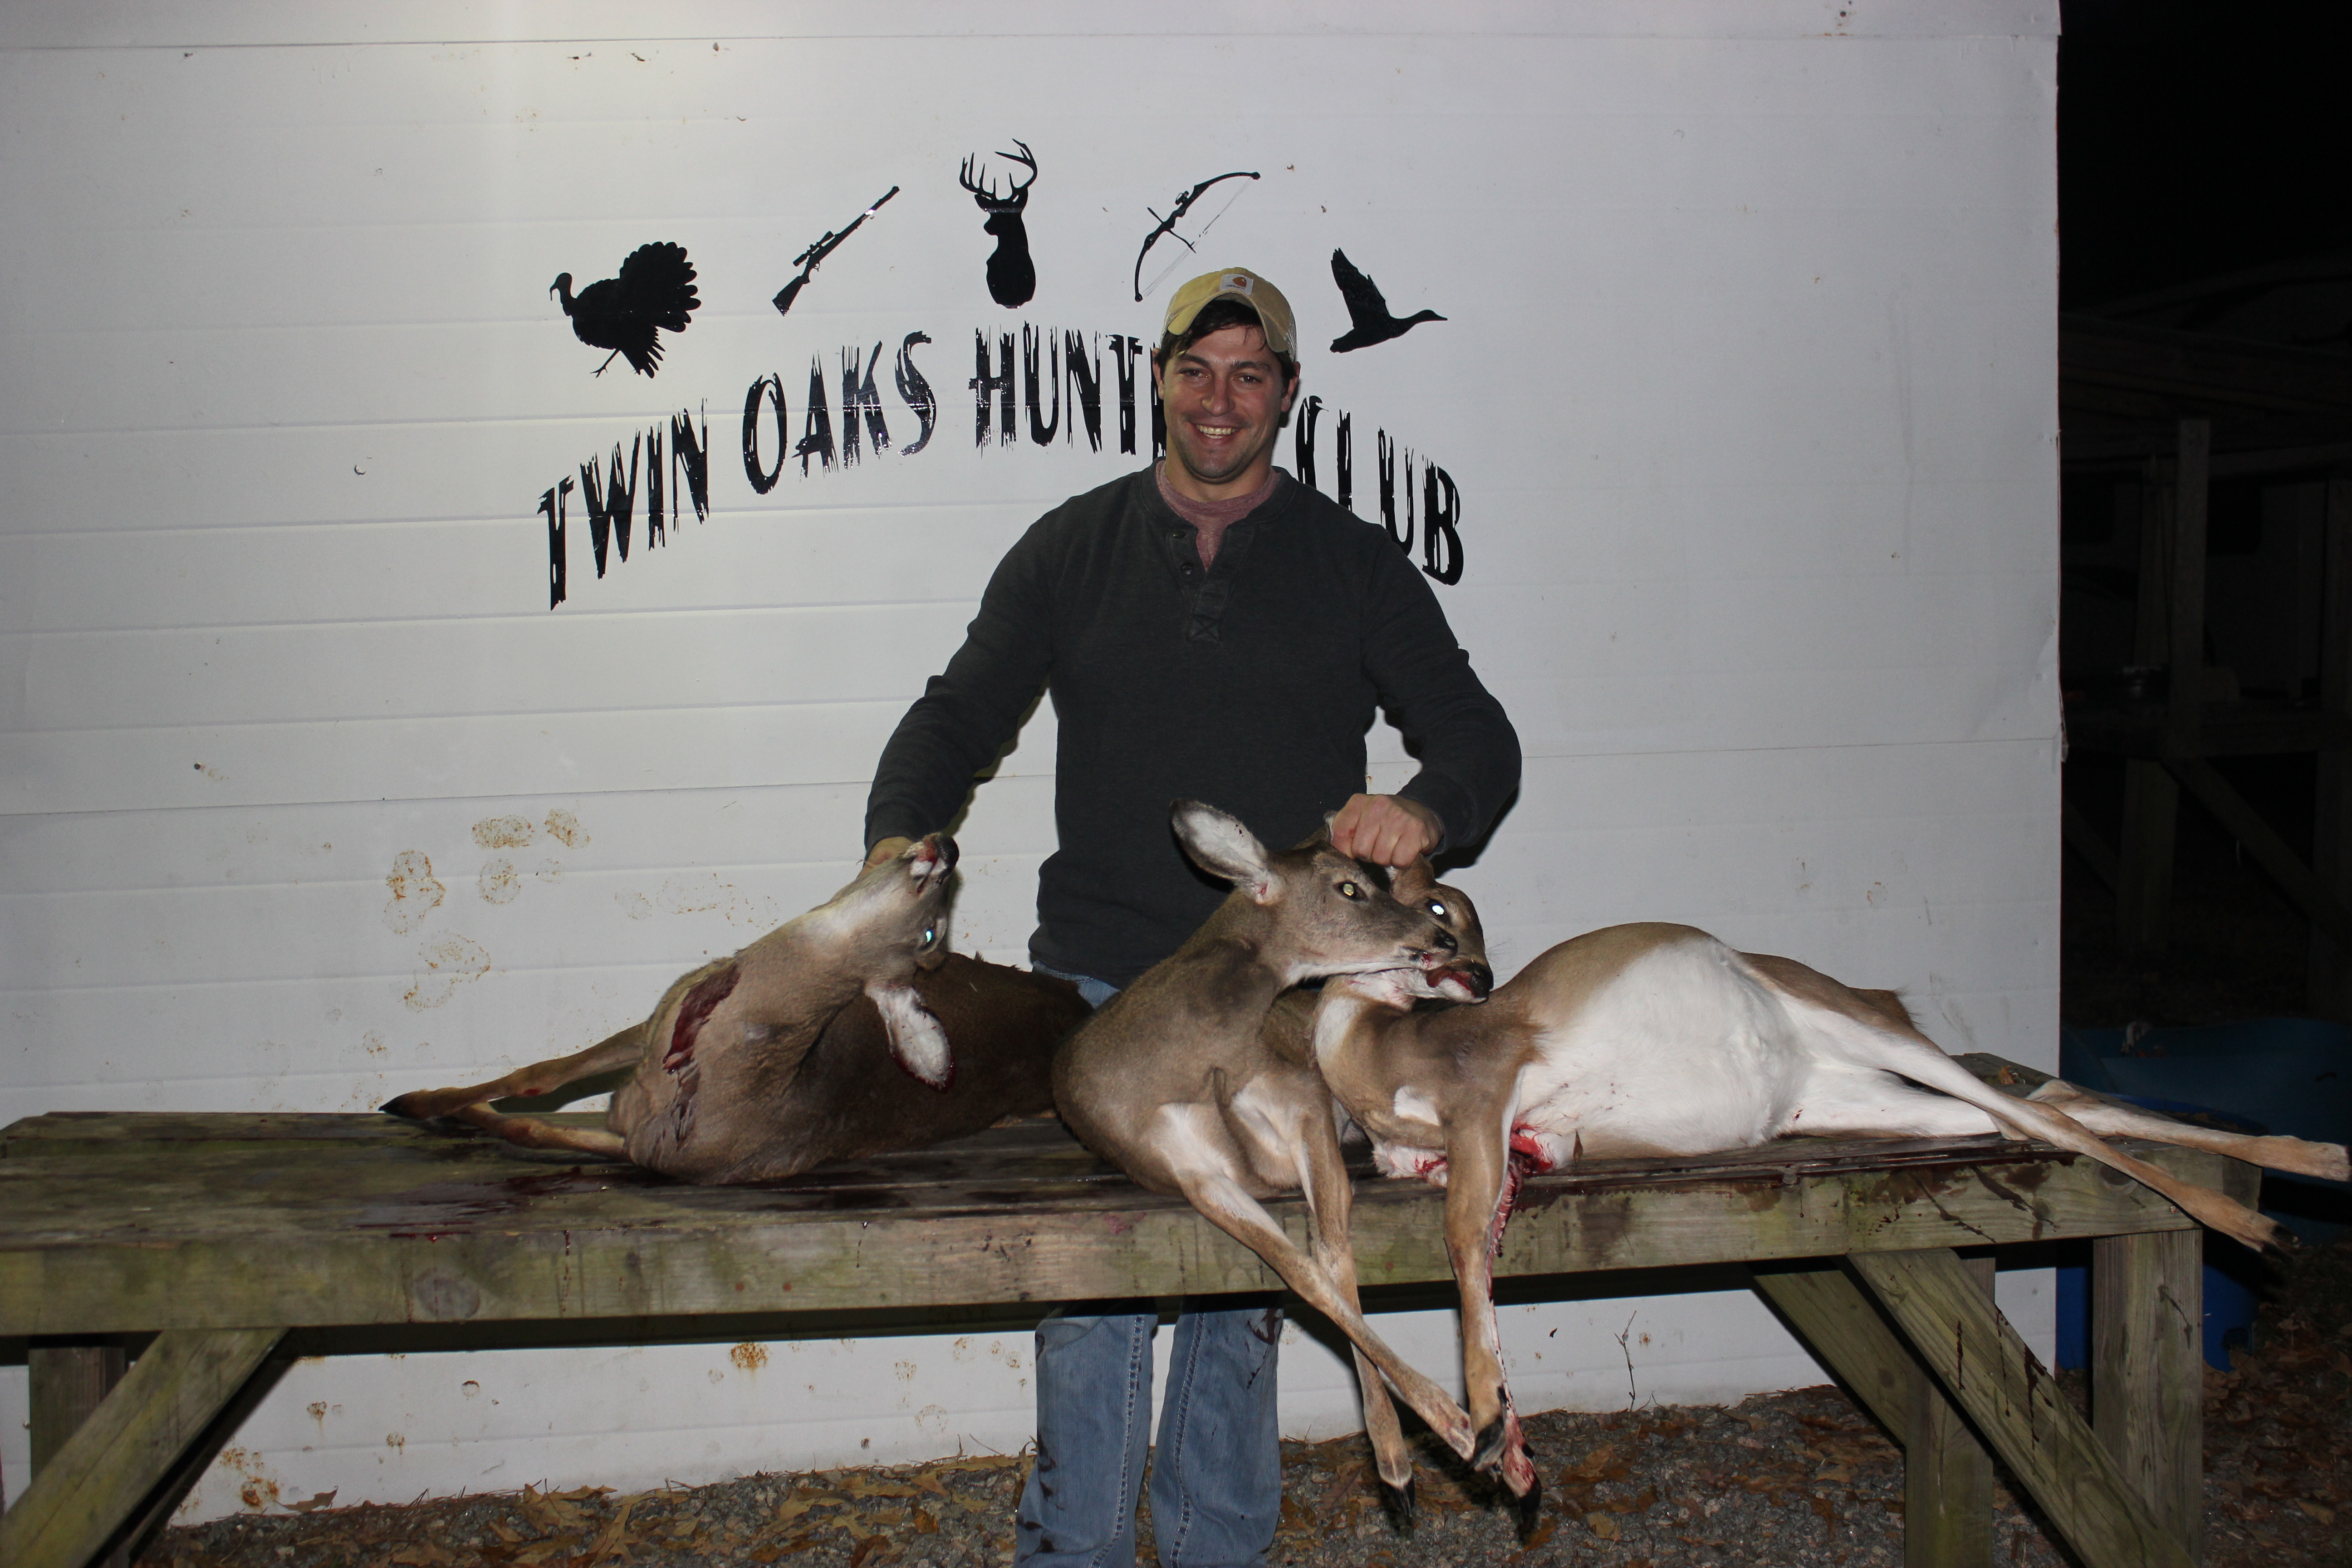 Combat Warrior Hunts Twin Oaks Hunting Club